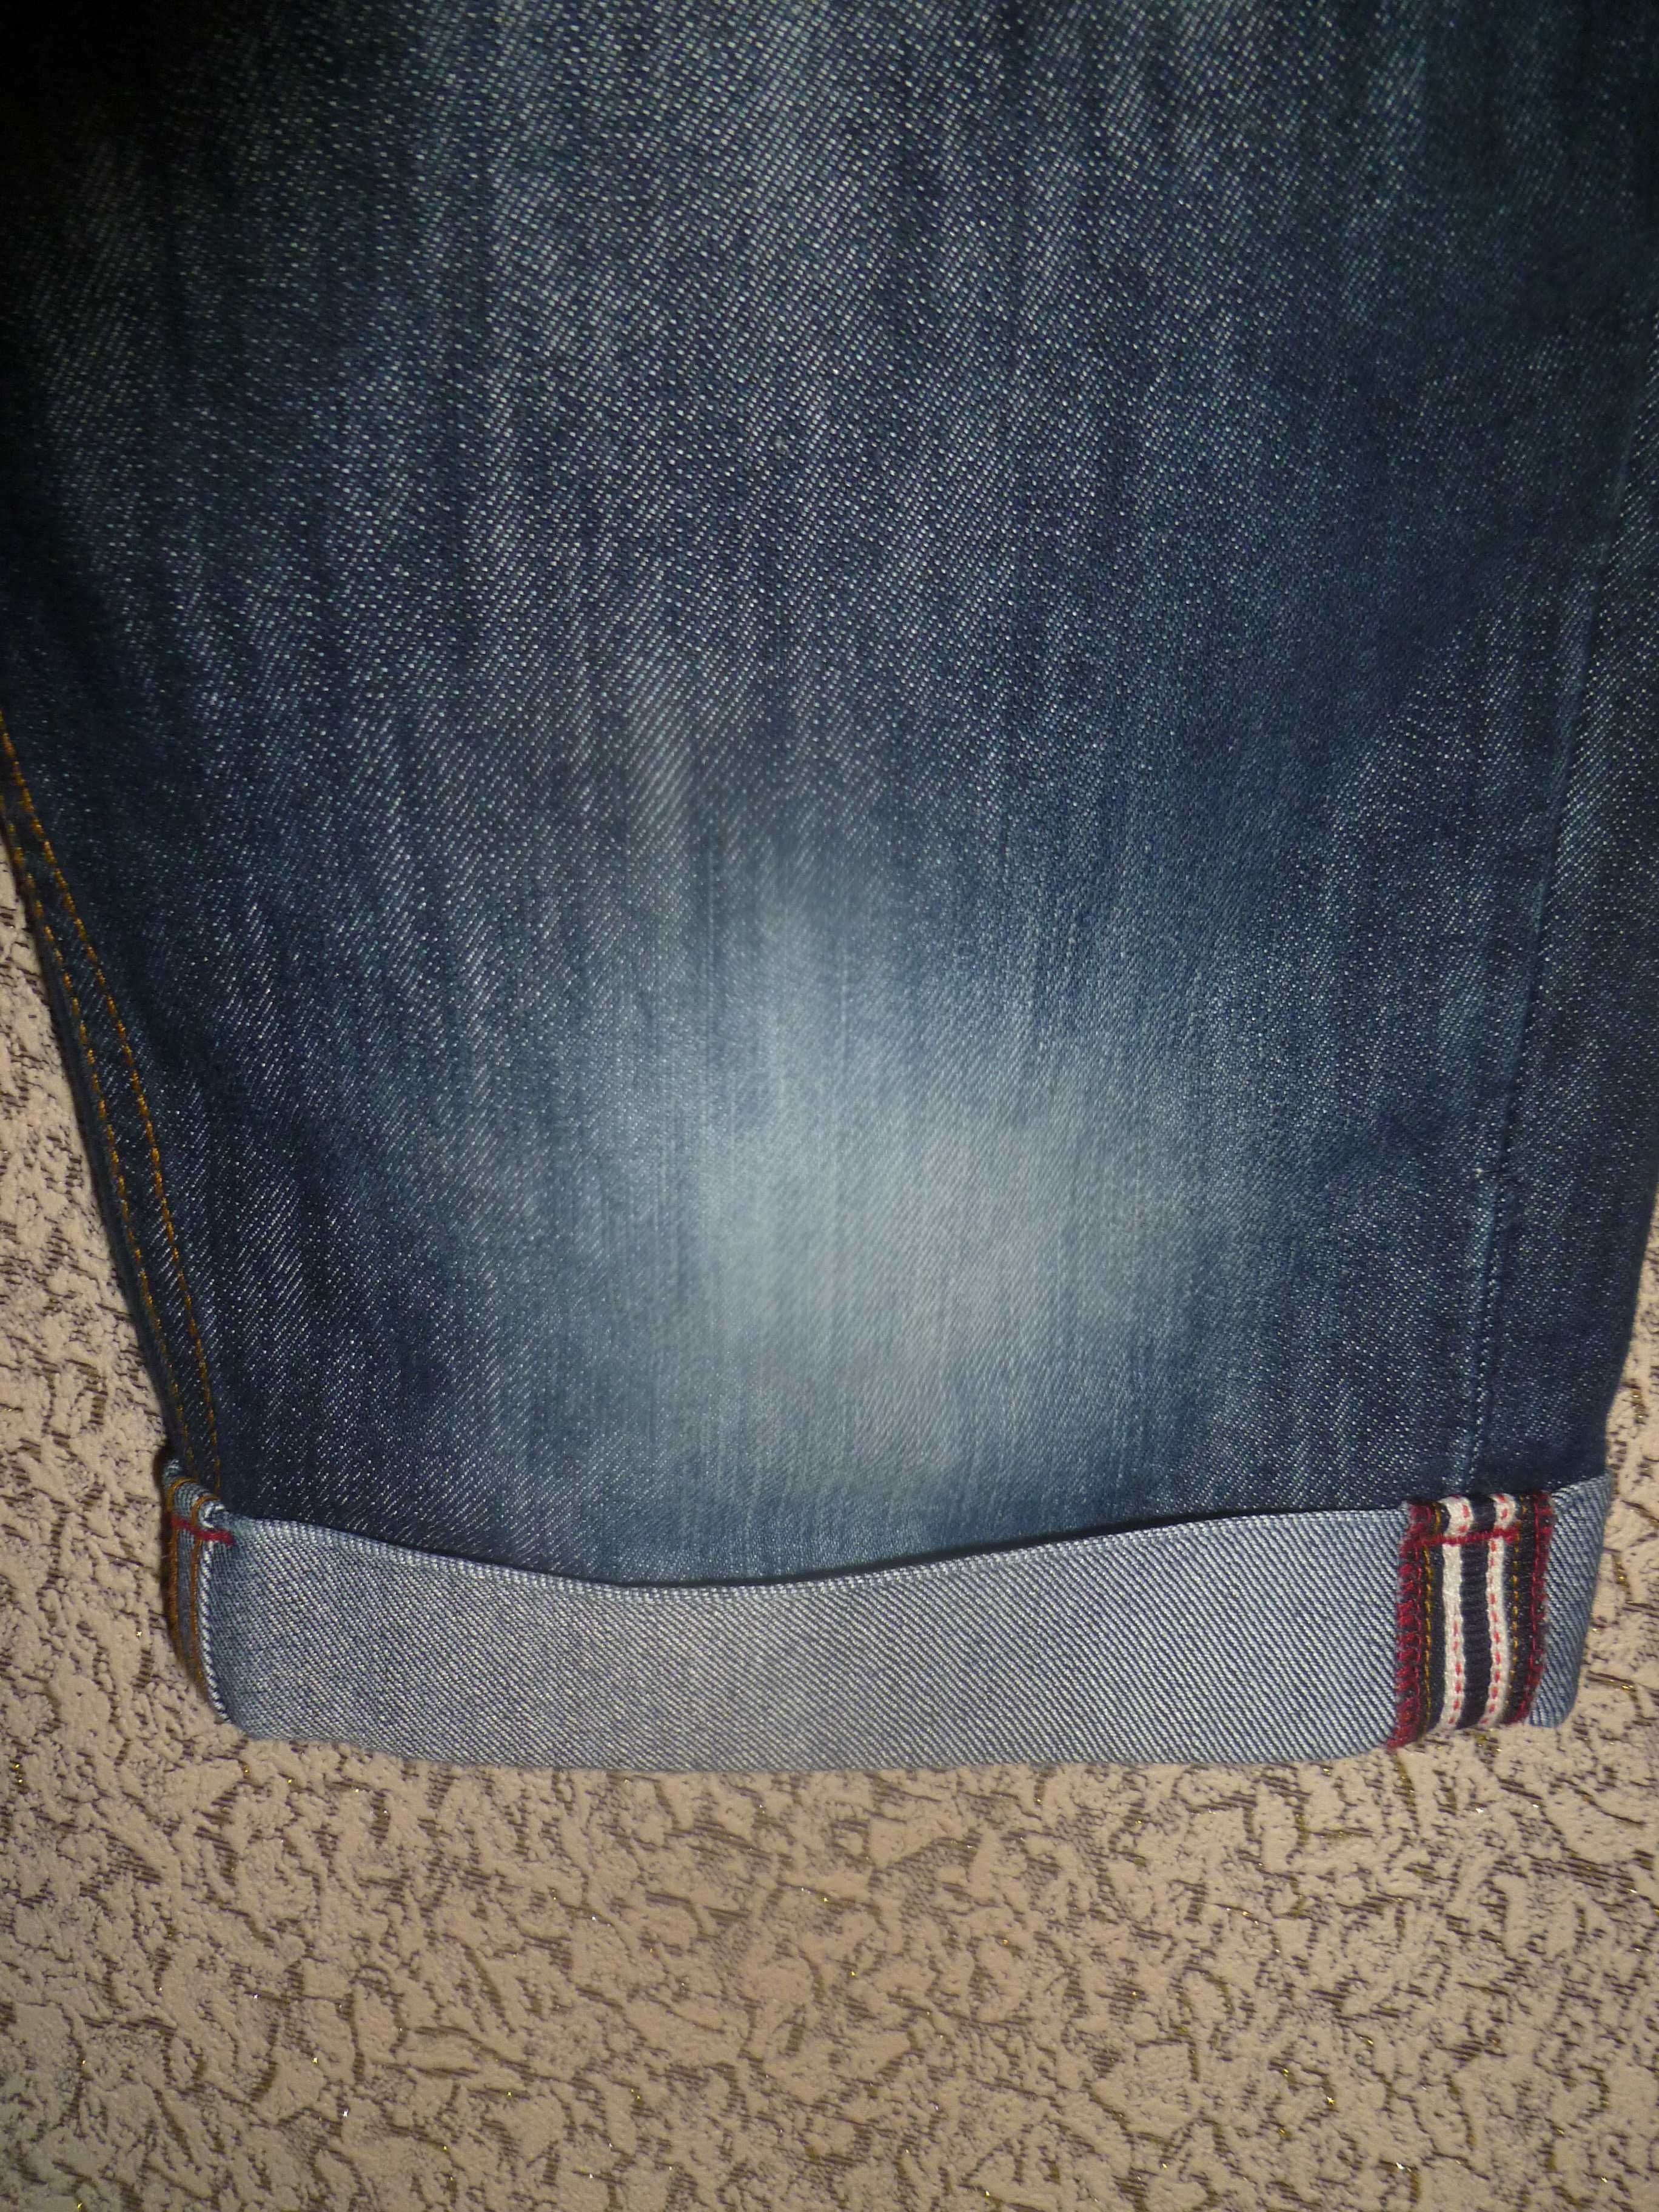 Мужские джинсовые шорты, р. W 30